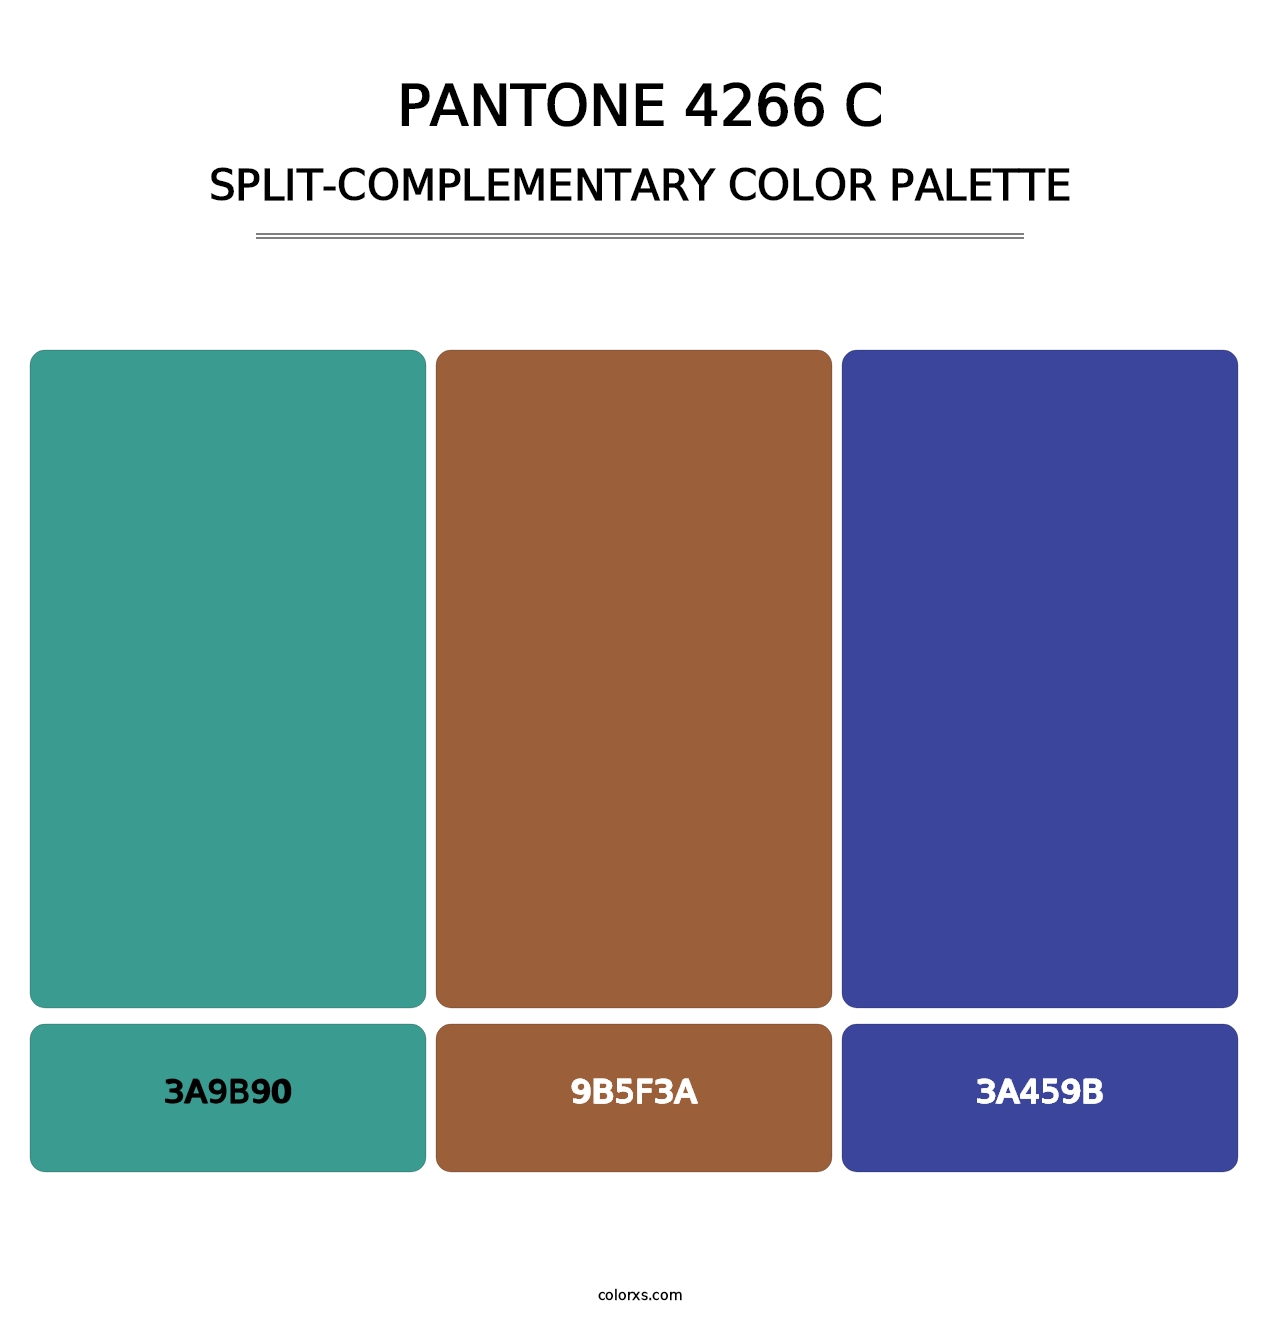 PANTONE 4266 C - Split-Complementary Color Palette